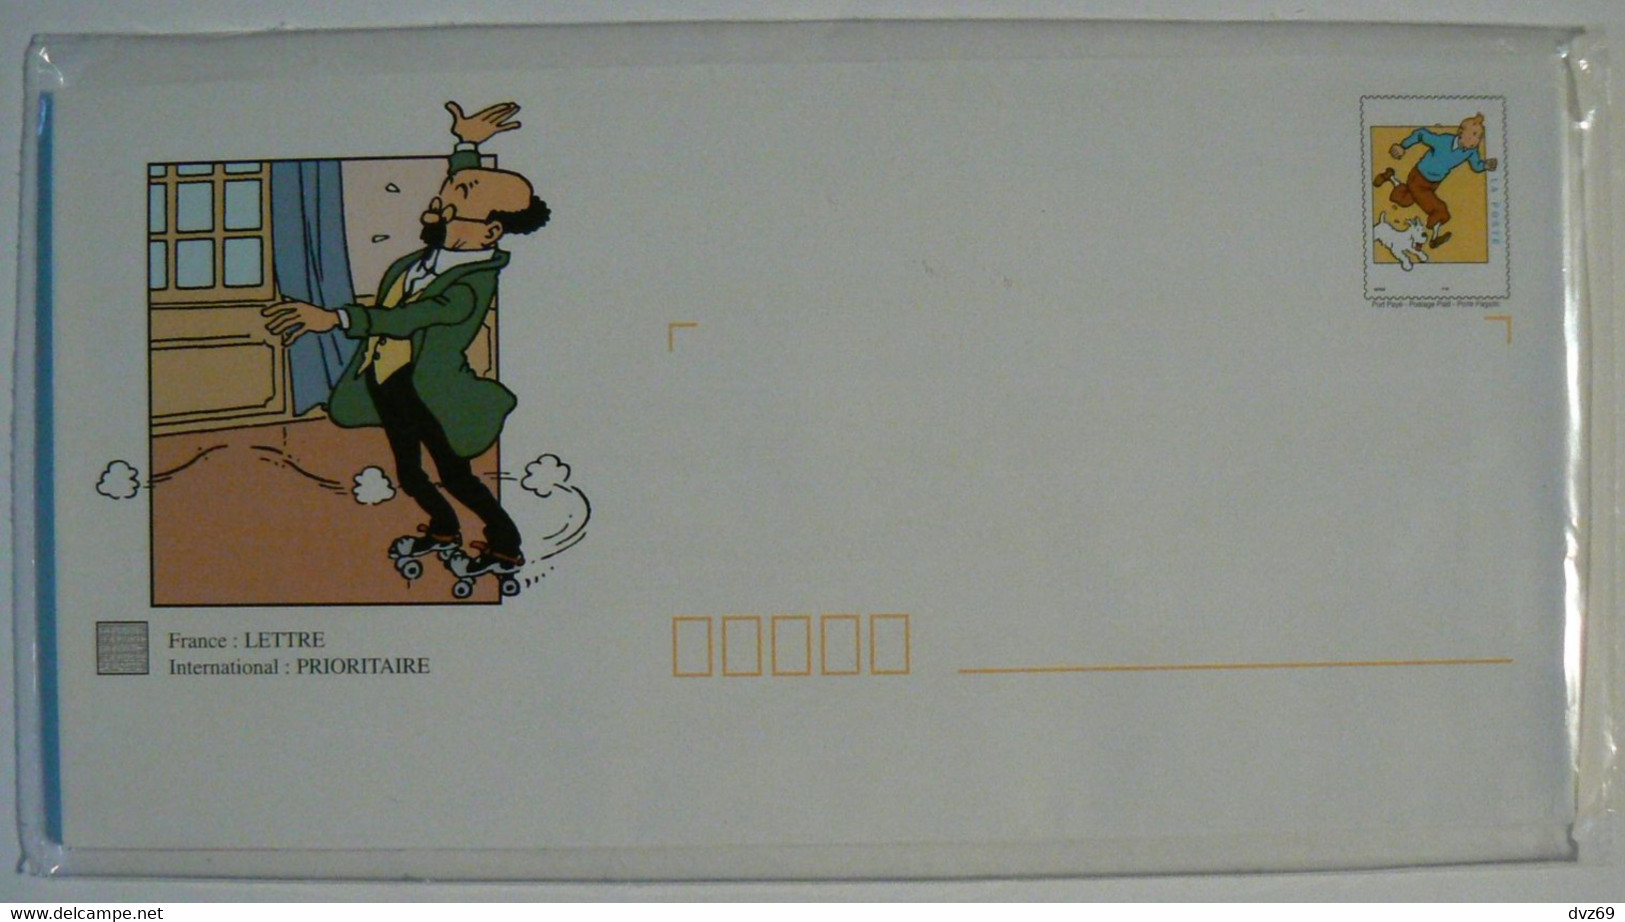 TINTIN 1999, 5 Enveloppes Pré-timbrées Illustrées + Cartes Assorties, Encore Sous Blister D'origine, TB. - Collections & Lots: Stationery & PAP